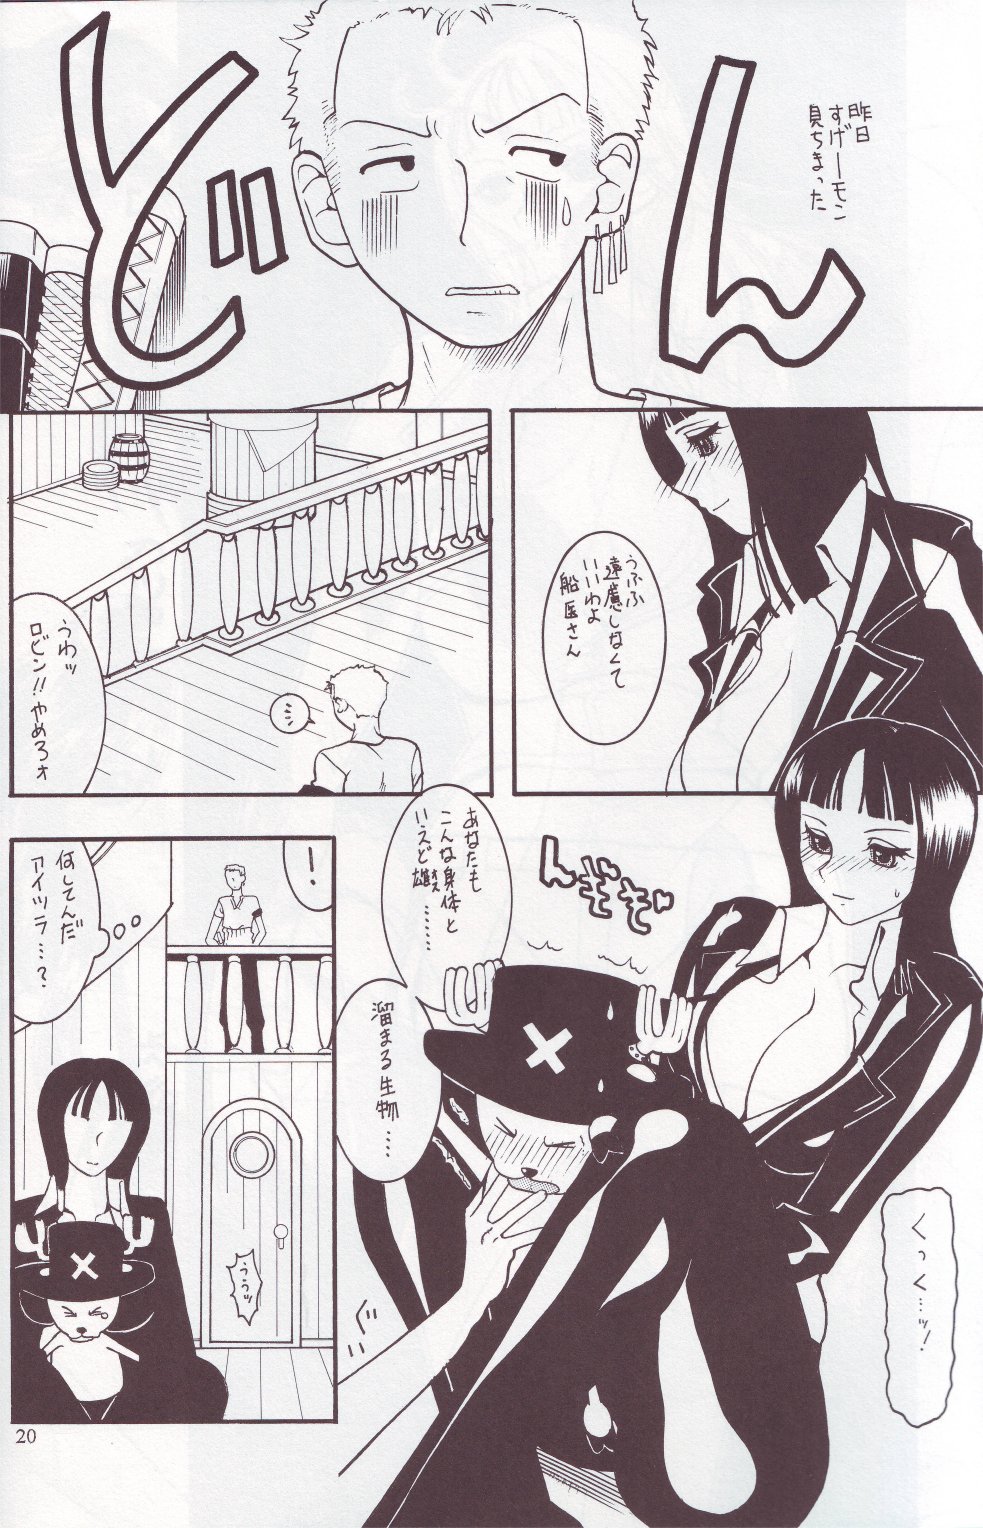 [SEMEDAIN G (Mizutani Mint, Mokkouyou Bond)] SEMEDAIN G WORKS vol.24 - Shuukan Shounen Jump Hon 4 (Bleach, One Piece) page 19 full